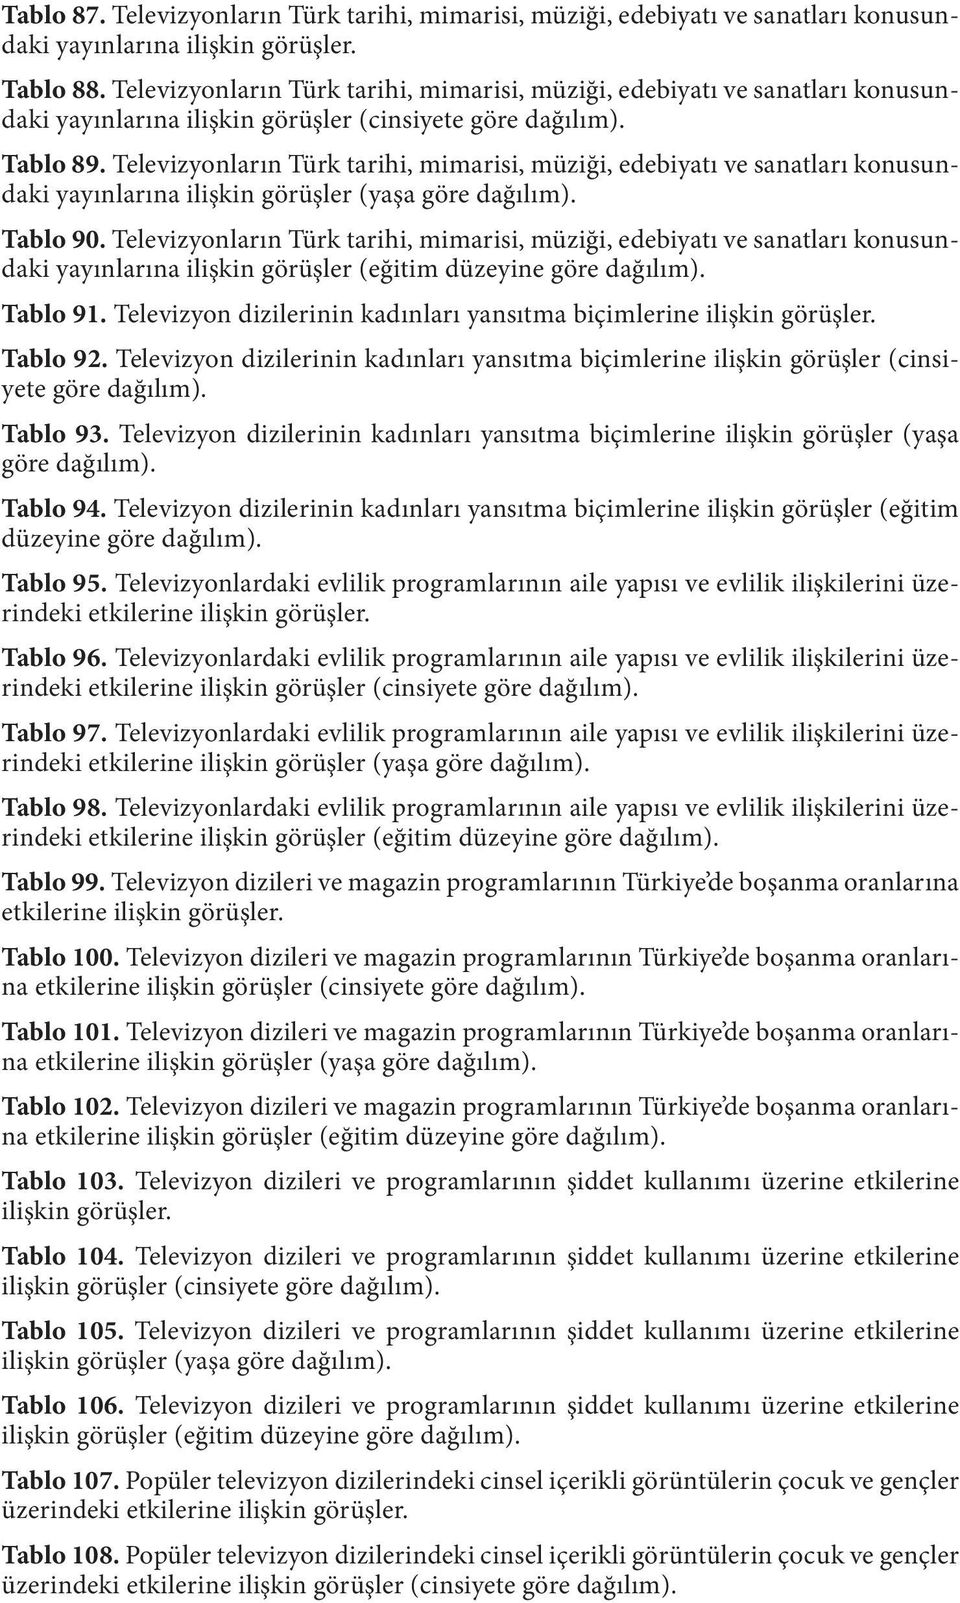 Televizyonların Türk tarihi, mimarisi, müziği, edebiyatı ve sanatları konusundaki yayınlarına ilişkin görüşler (yaşa göre dağılım). Tablo 90.